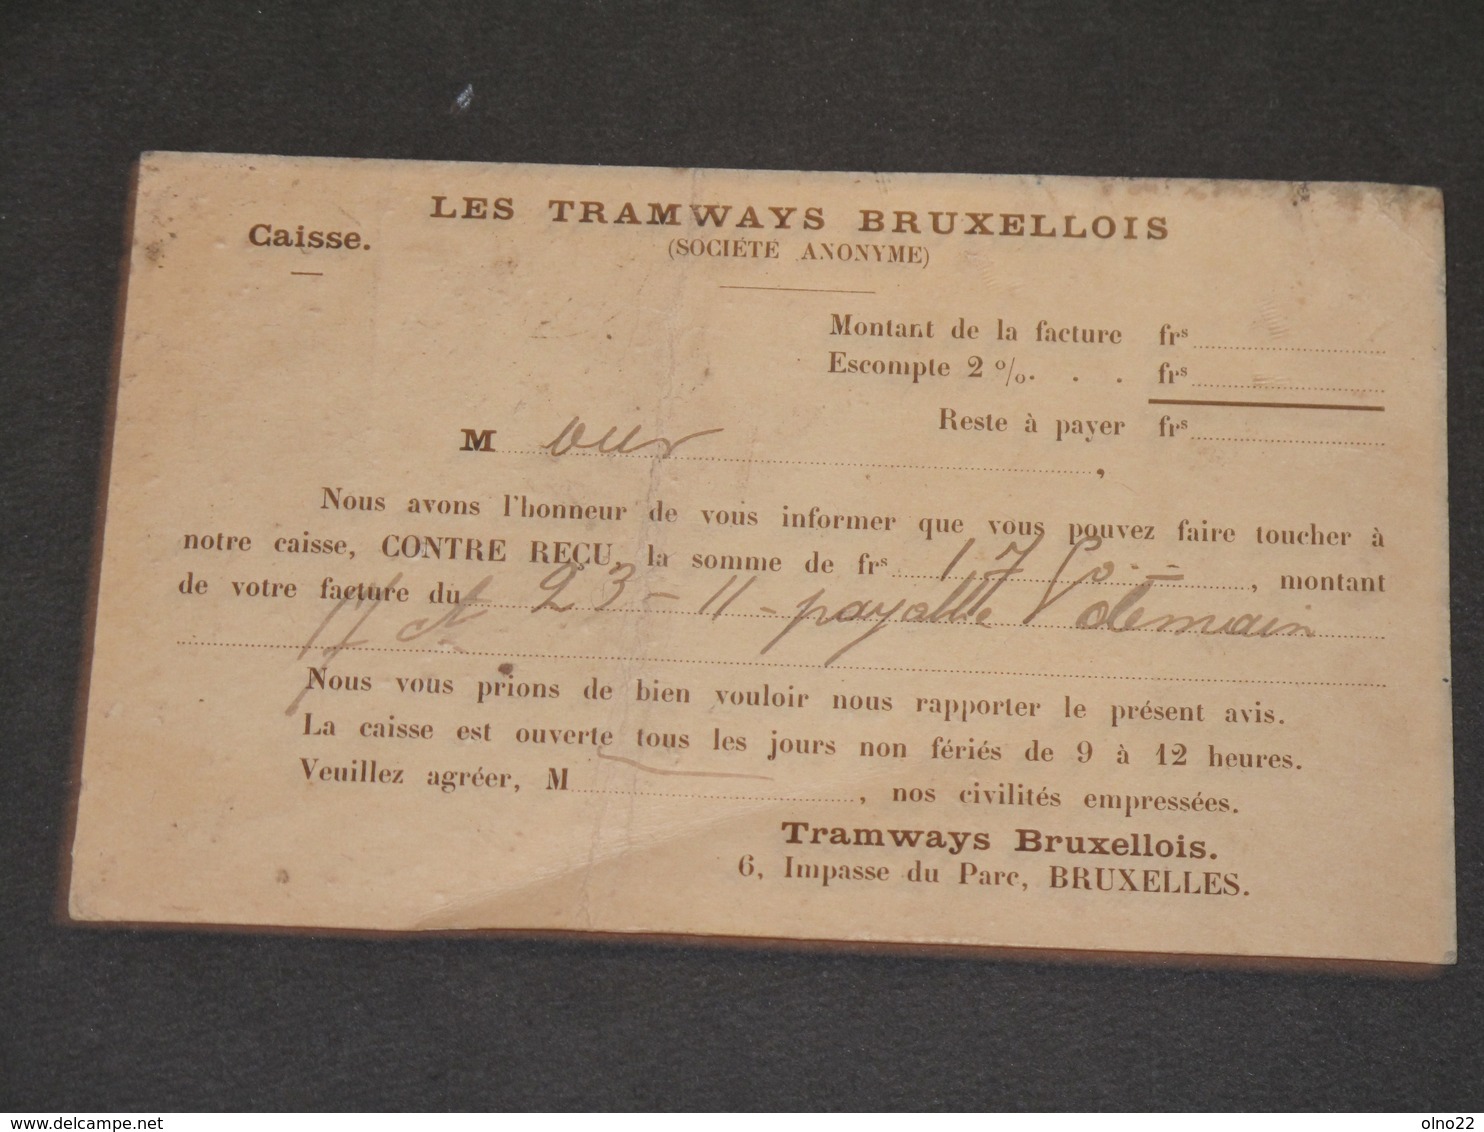 BRUXELLES - 1901 - CPA TRAMWAY BRUXELLOIS 6 IMPASSE DU PARC - Chemins De Fer, Gares